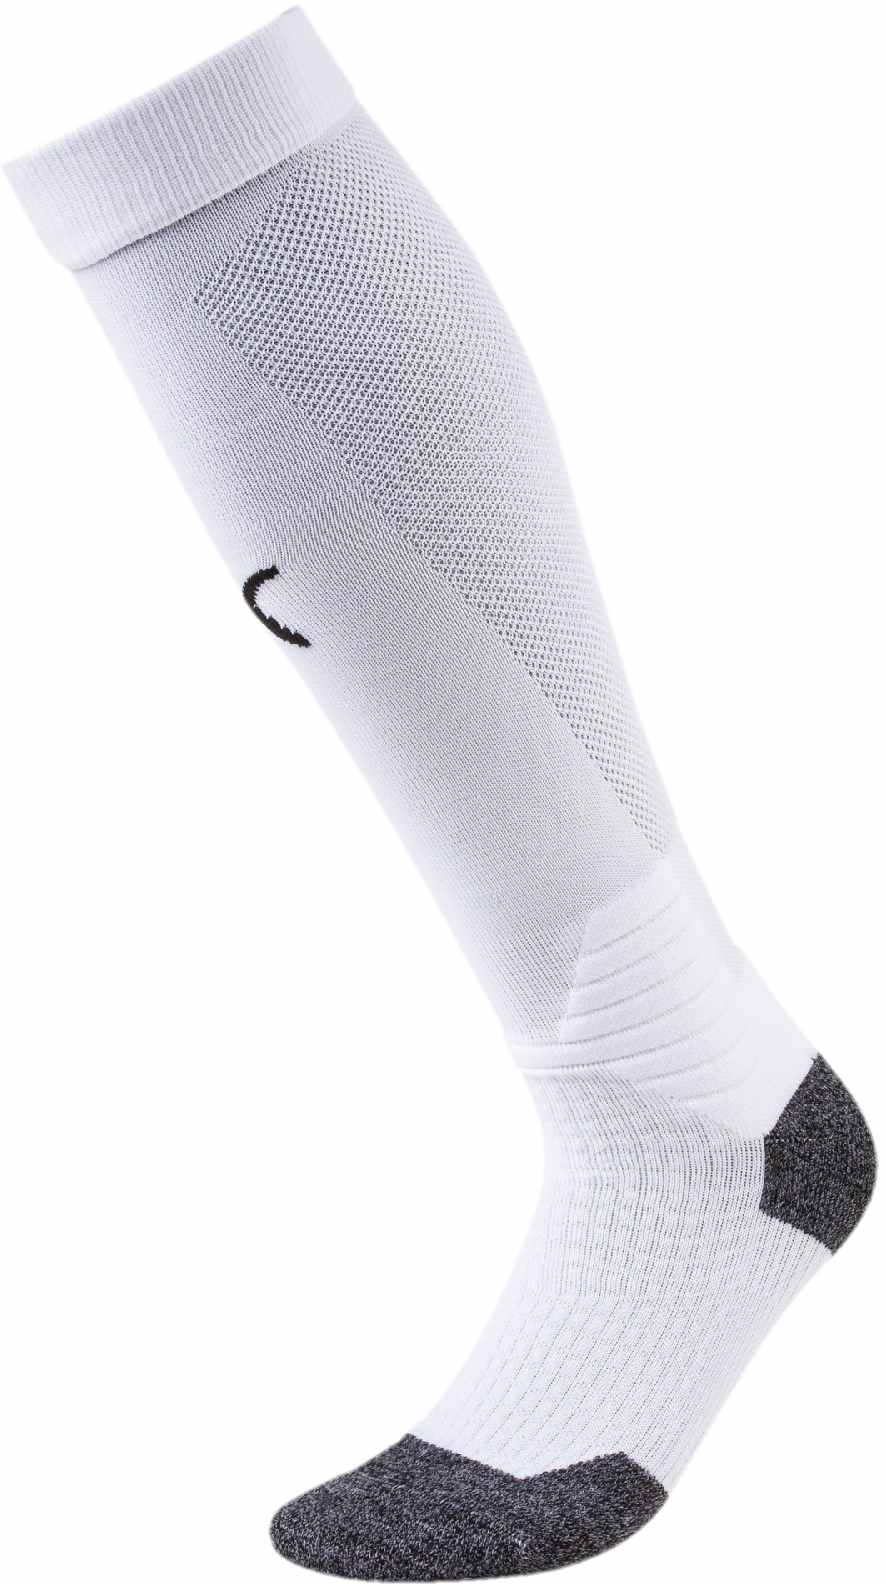 Men's football socks